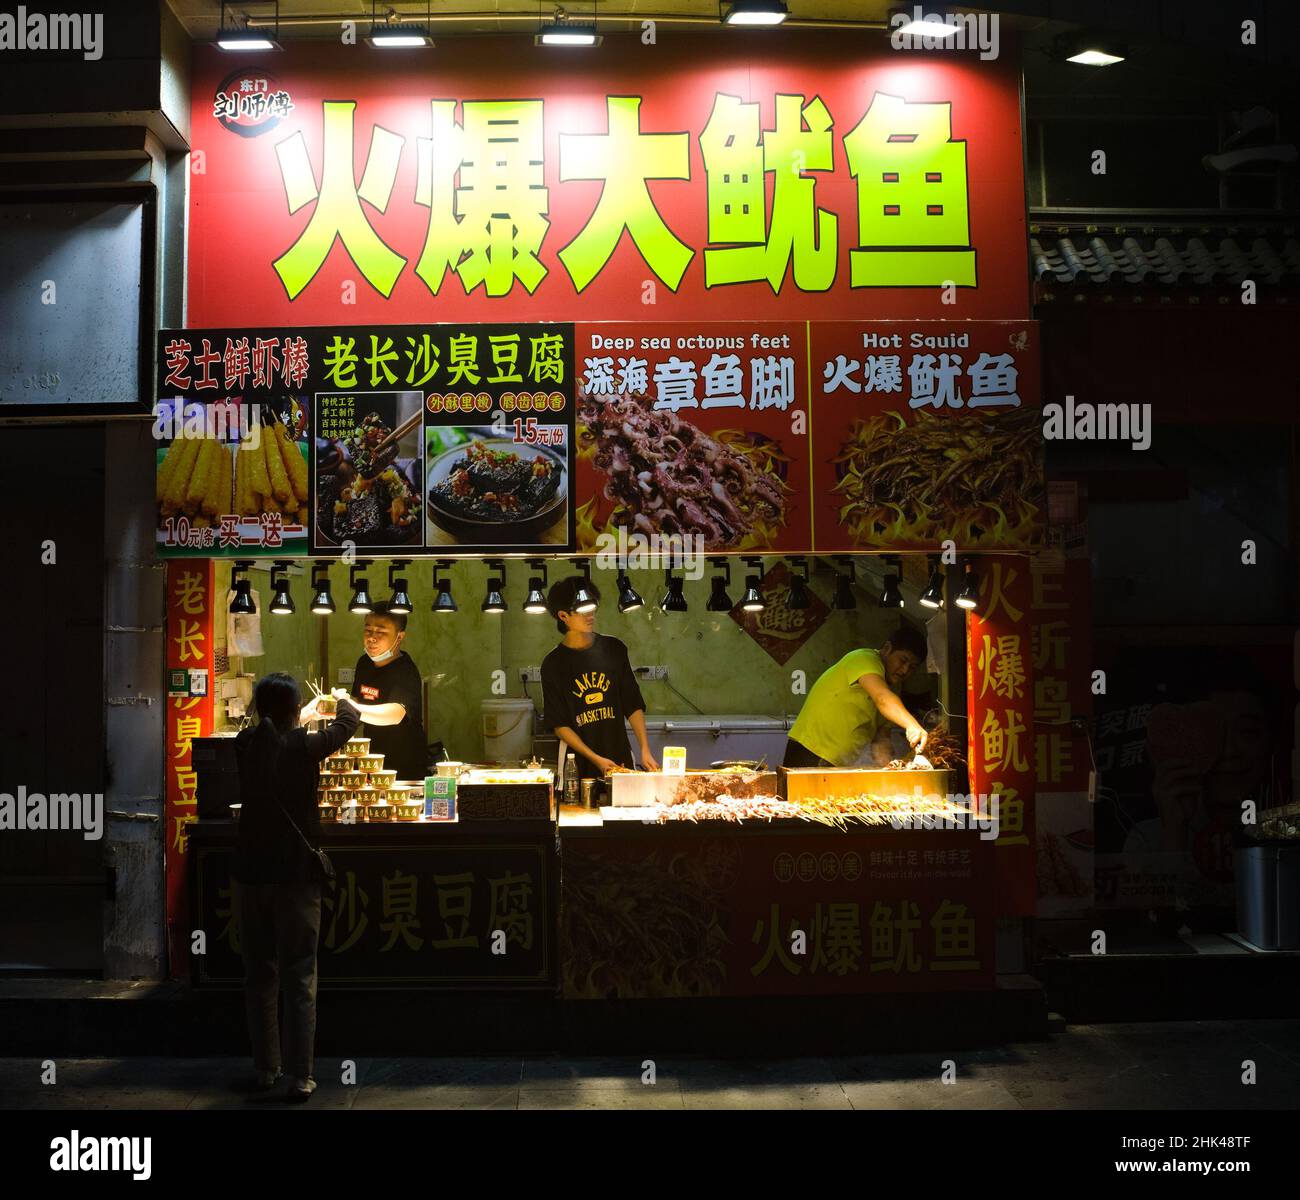 Puesto de comida china que vende bocadillos de calamar a un cliente en Shenzhen, China Foto de stock